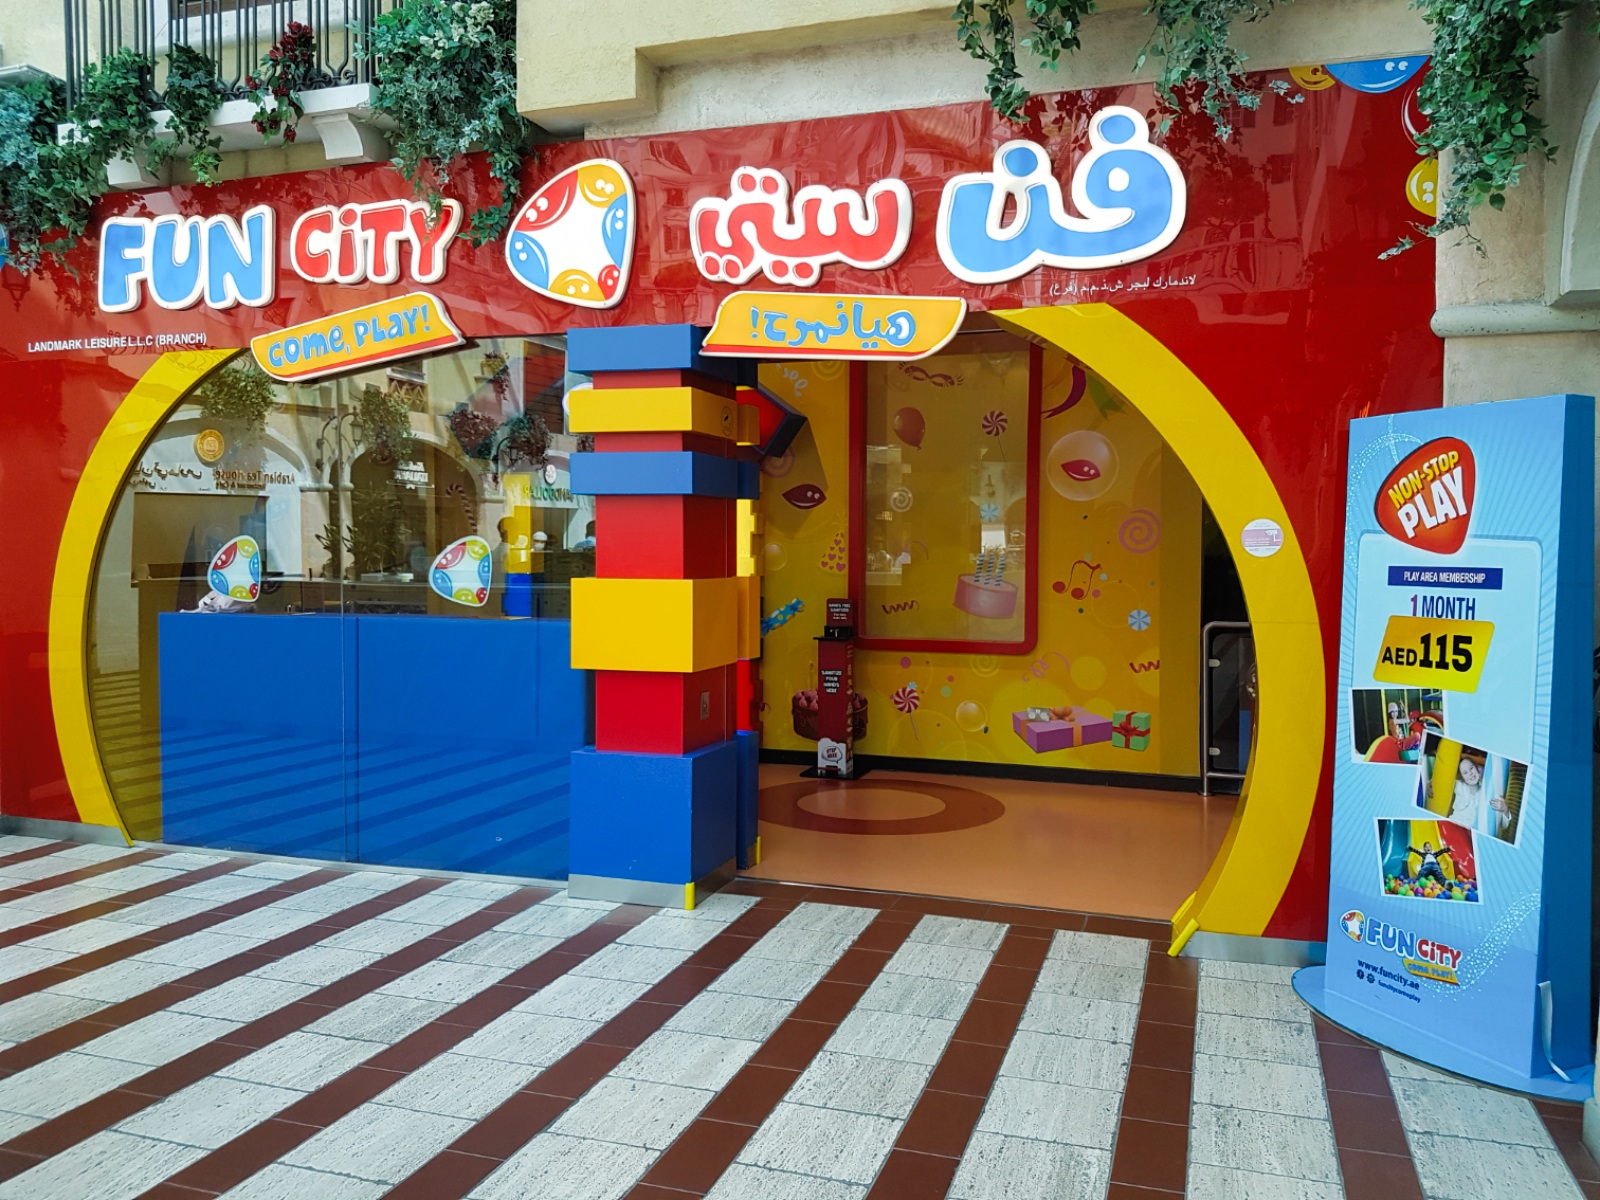 Mercato Shopping Mall in Dubai - Fun City